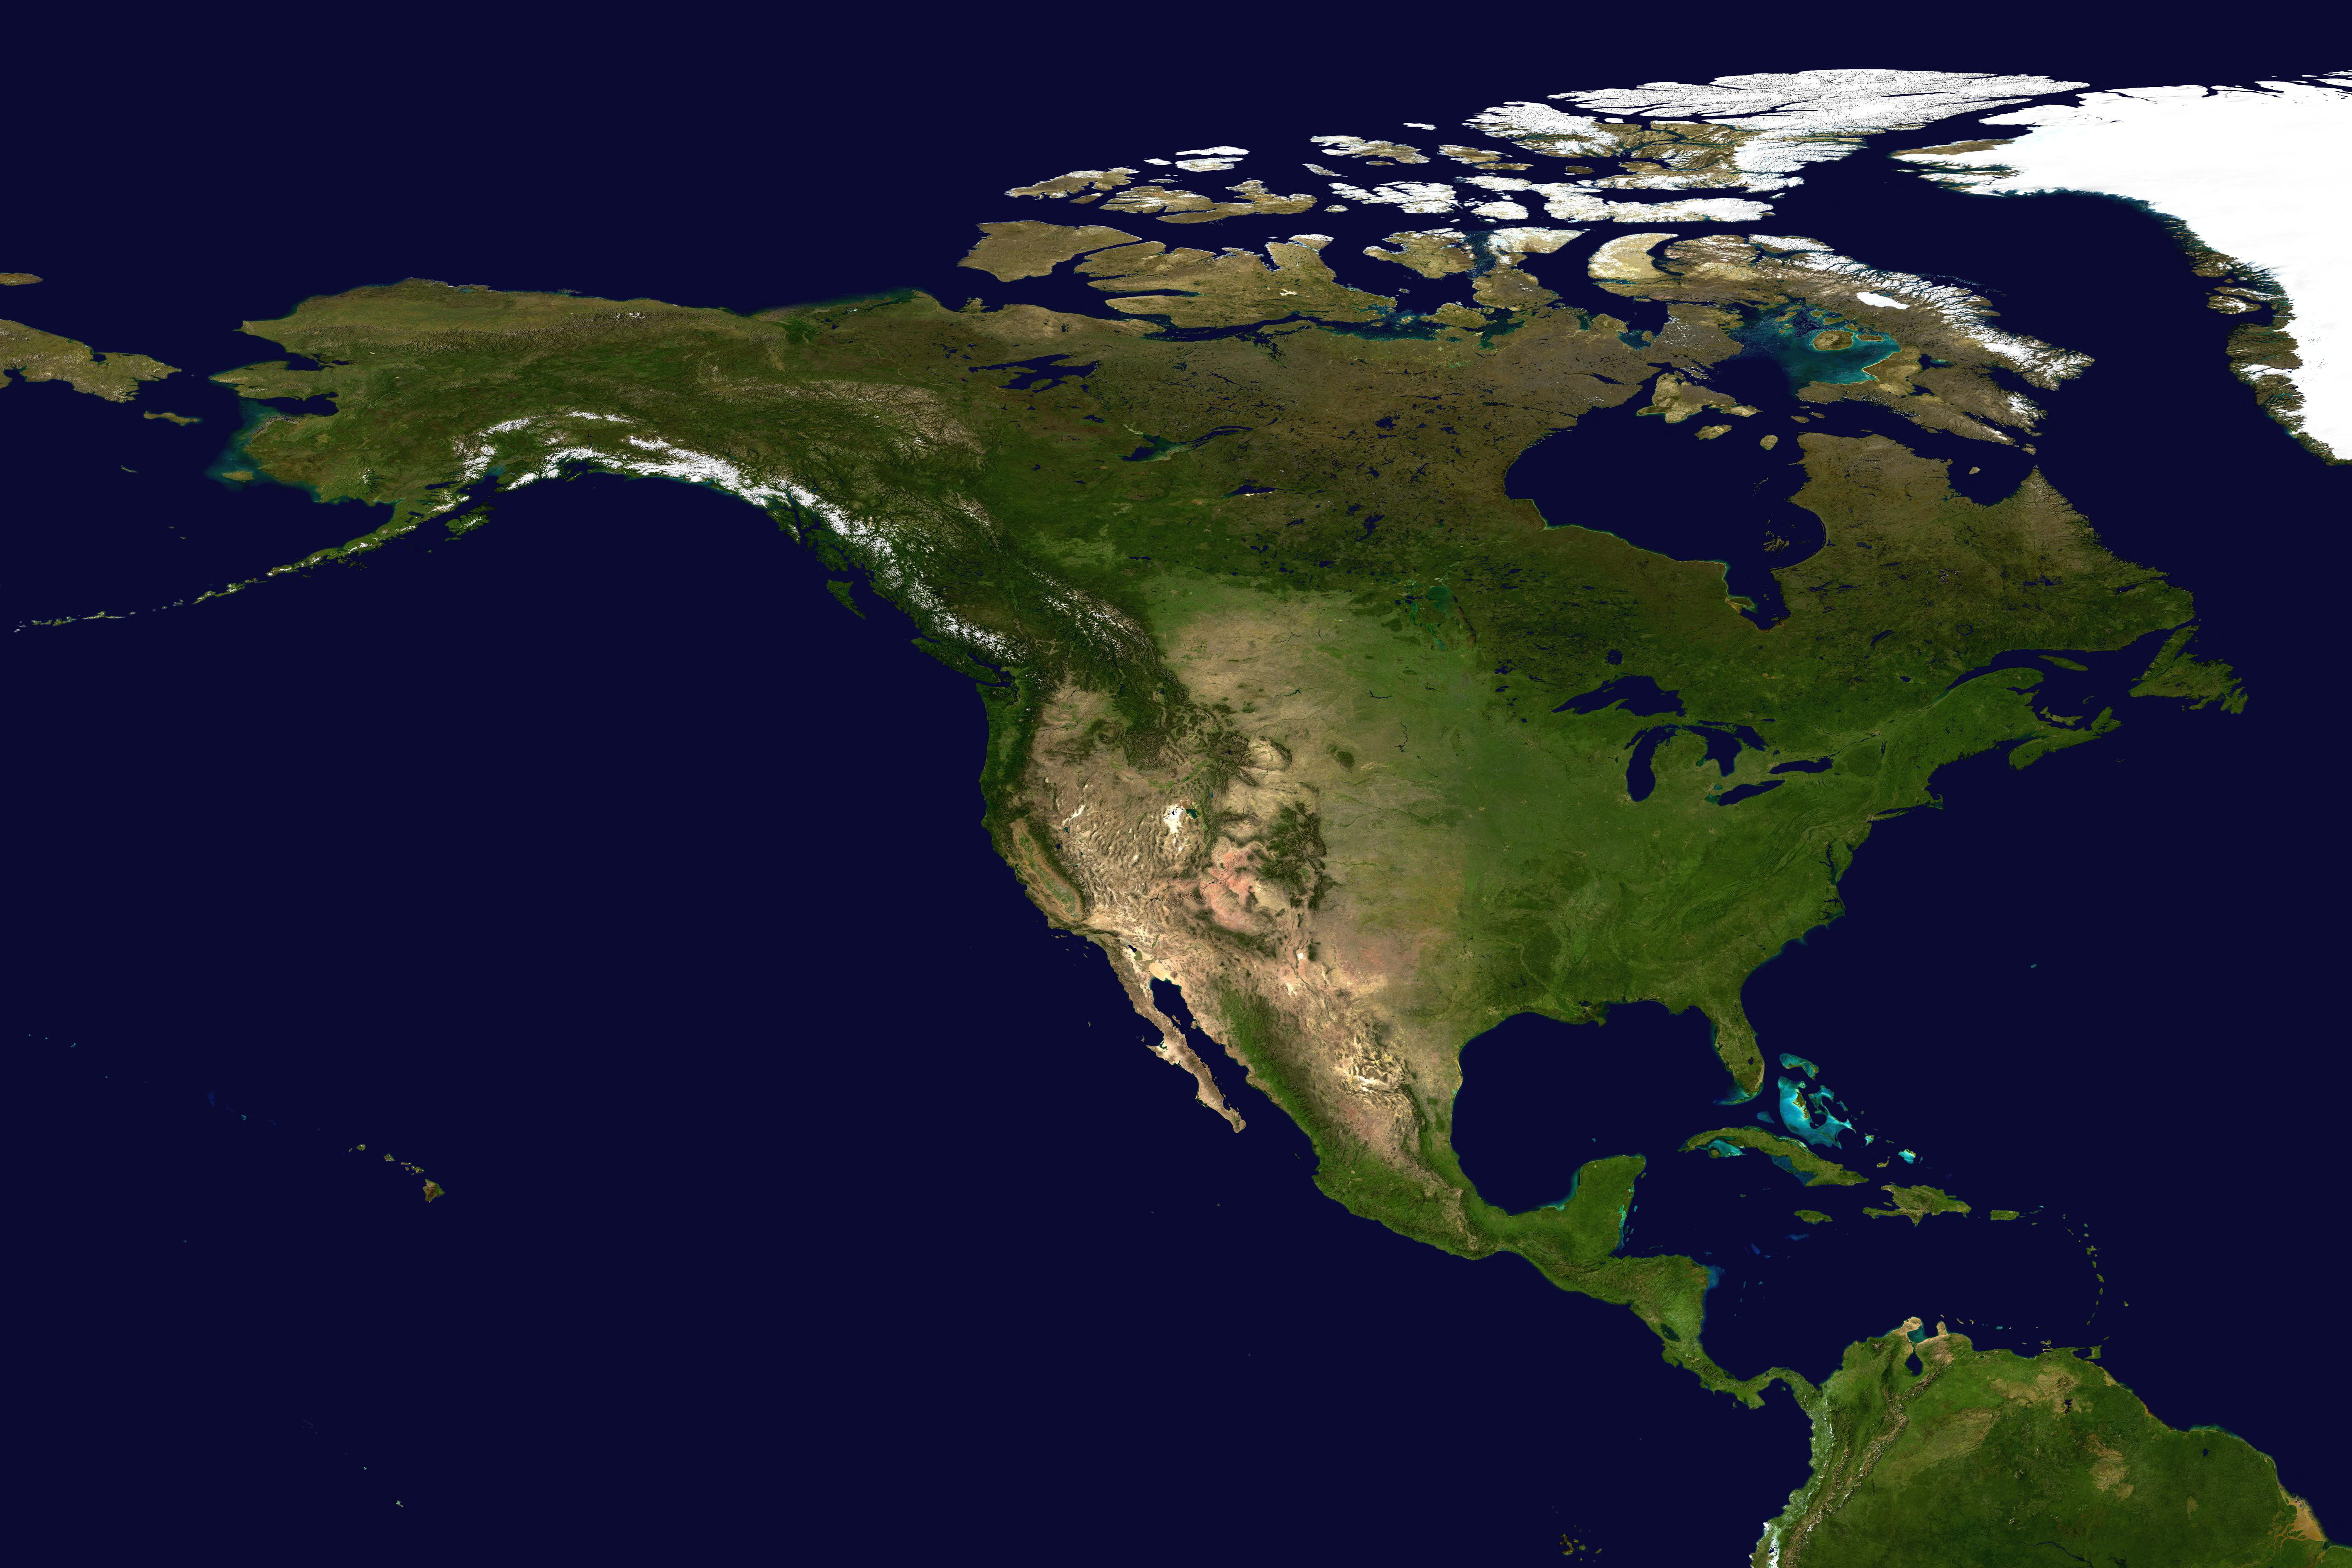 North America, Earth, satellite photo, sea, space, satellite view